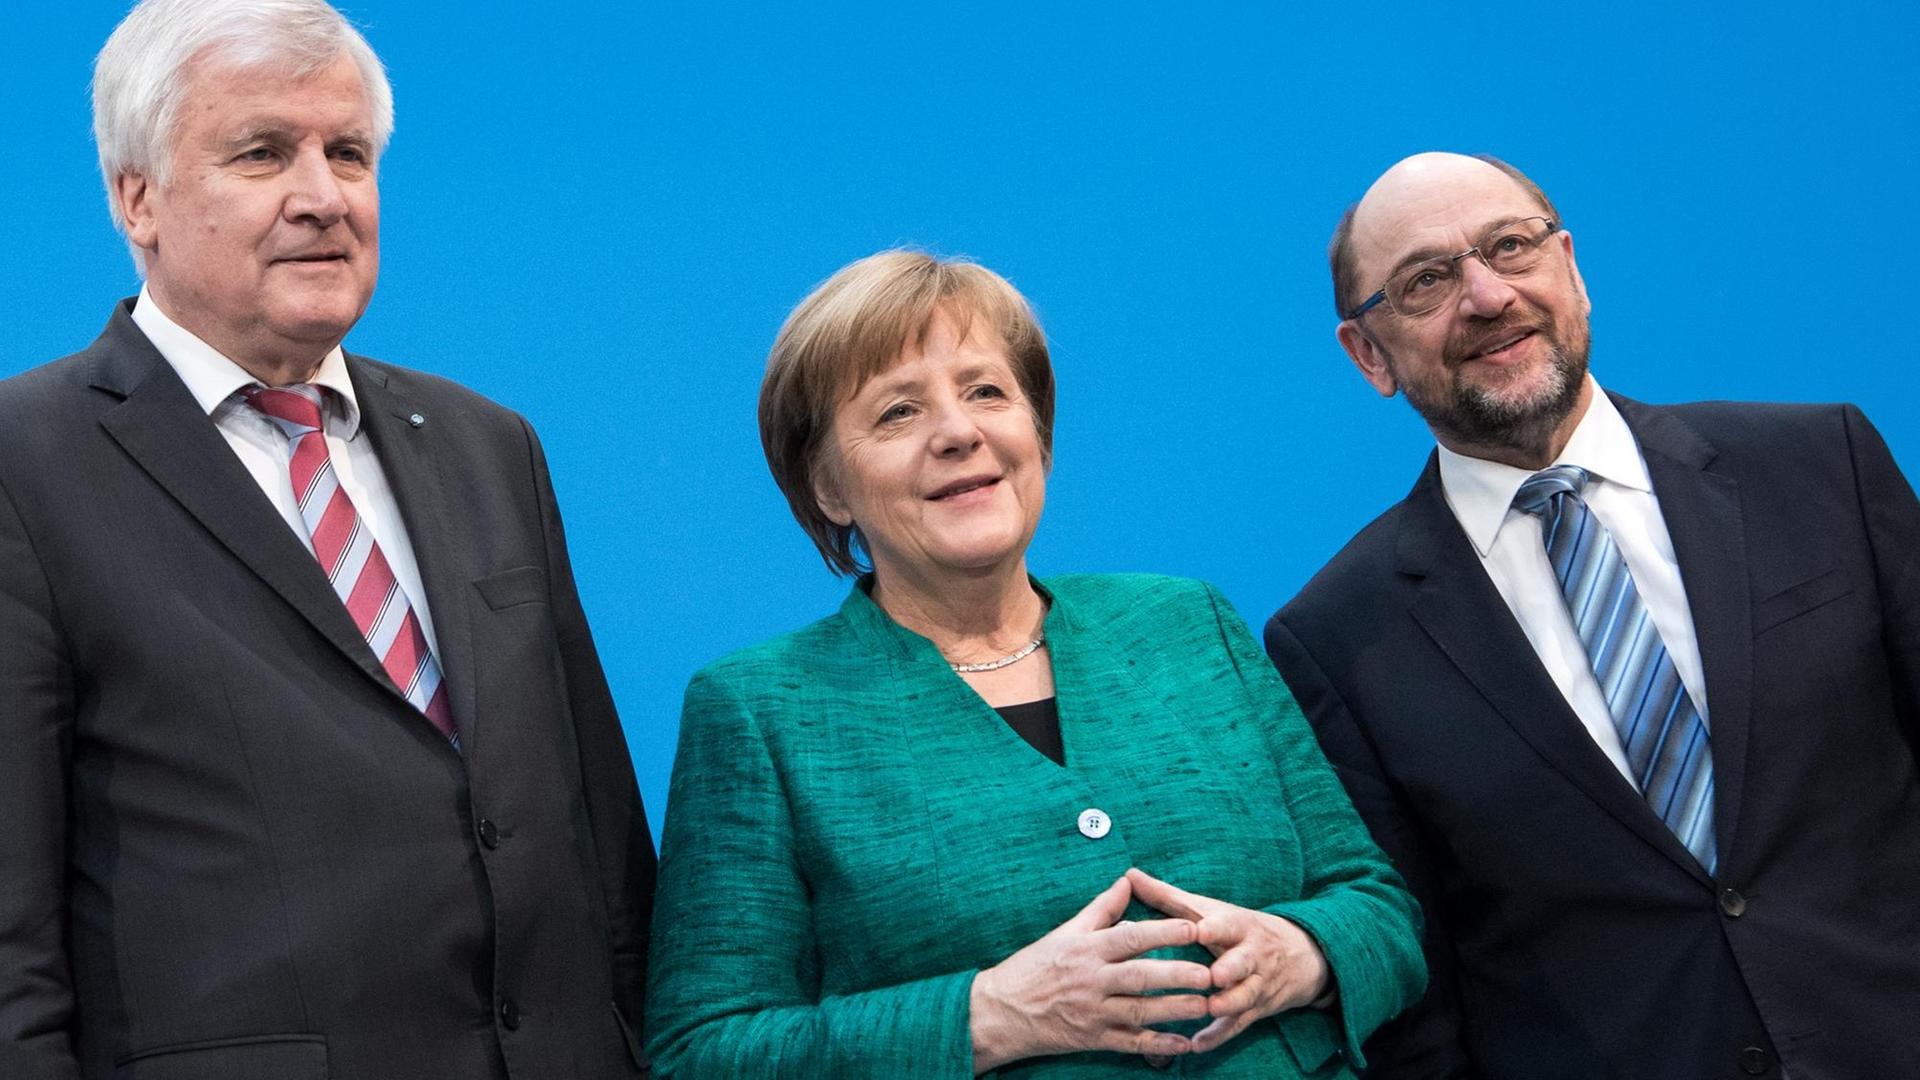 Da schienen sie noch zu Dritt regieren zu können: Martin Schulz, SPD, Horst Seehofer, CSU und die Bundeskanzlerin Angela Merkel, CDU